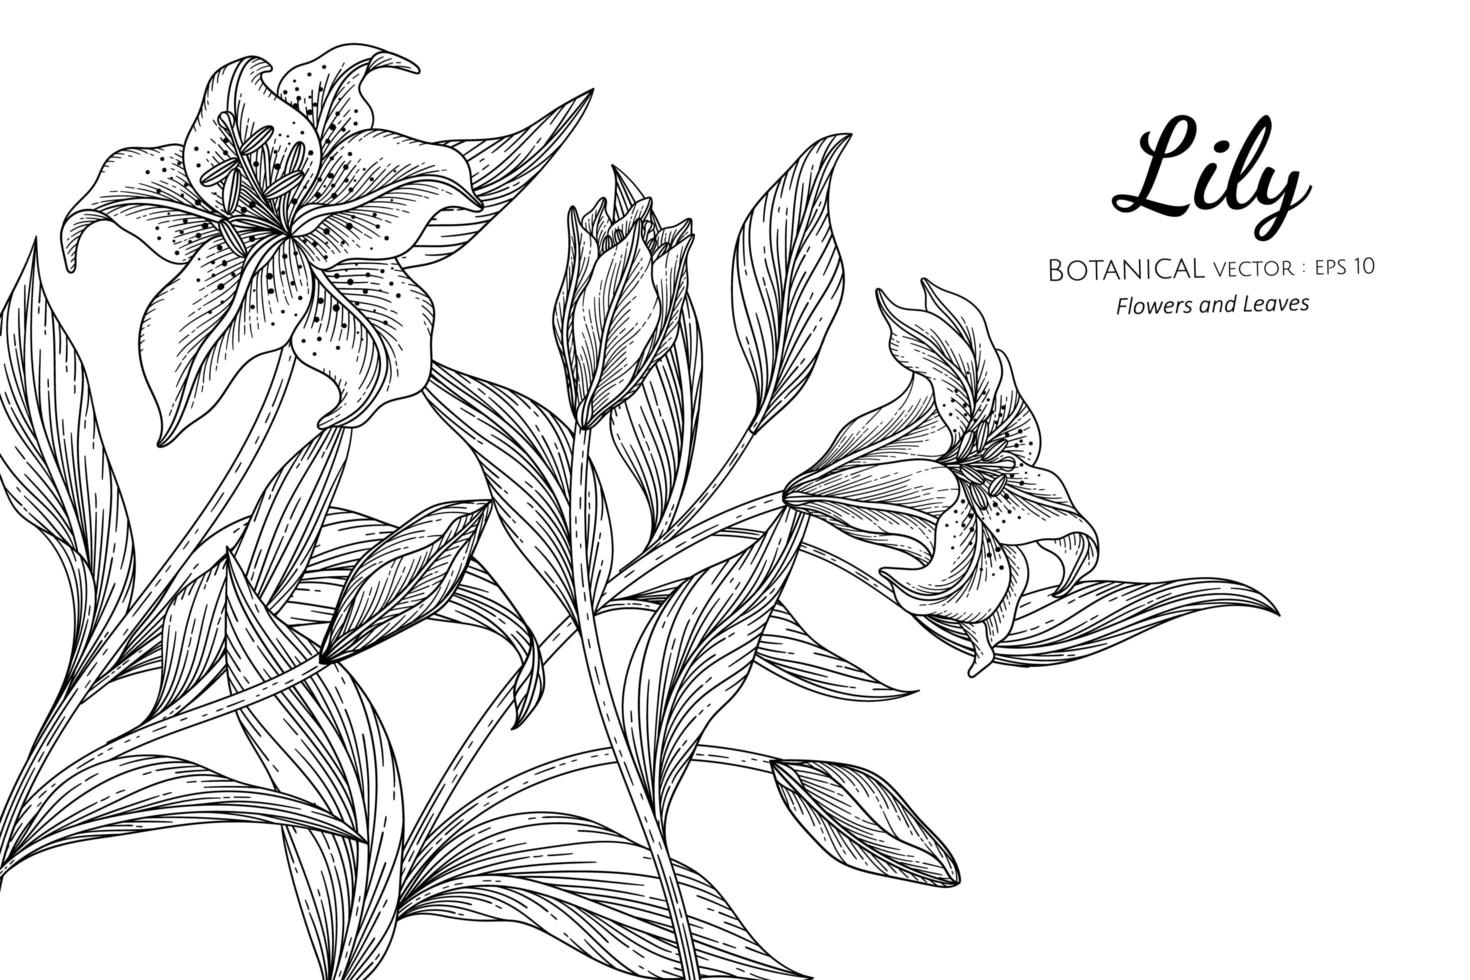 lilja blomma och blad handritad botanisk illustration med konturteckningar på vit bakgrund vektor